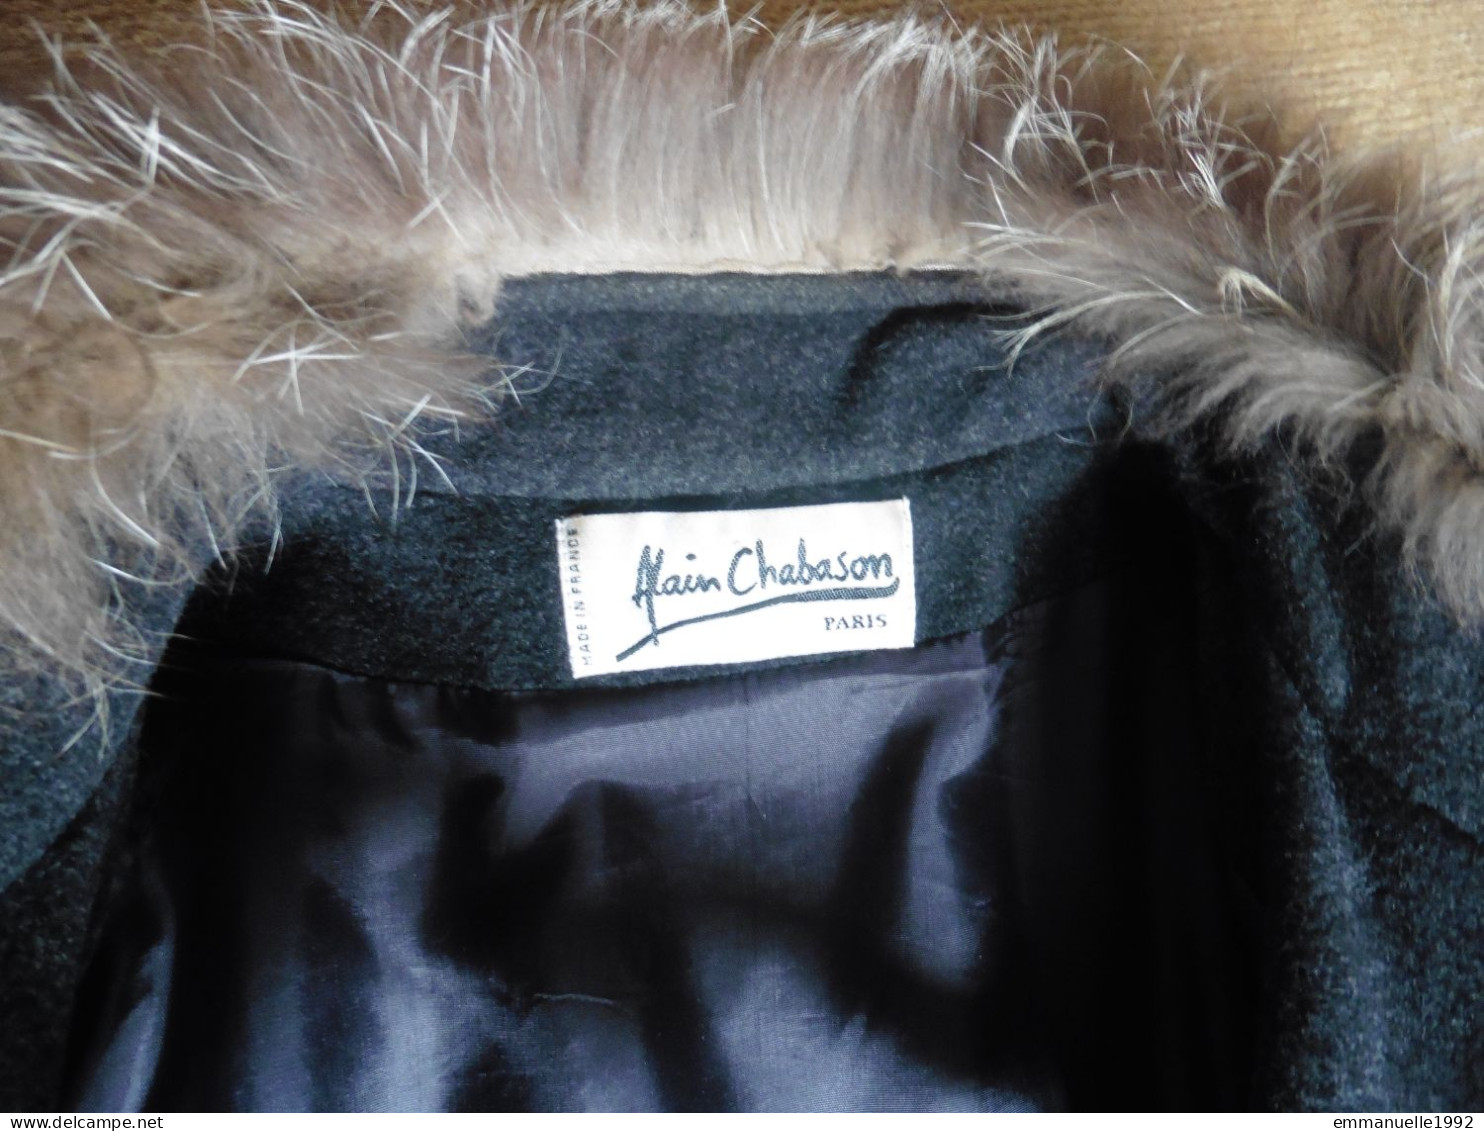 Manteau femme Alain Chabason laine cachemire gris foncé col & pompons en fourrure beige